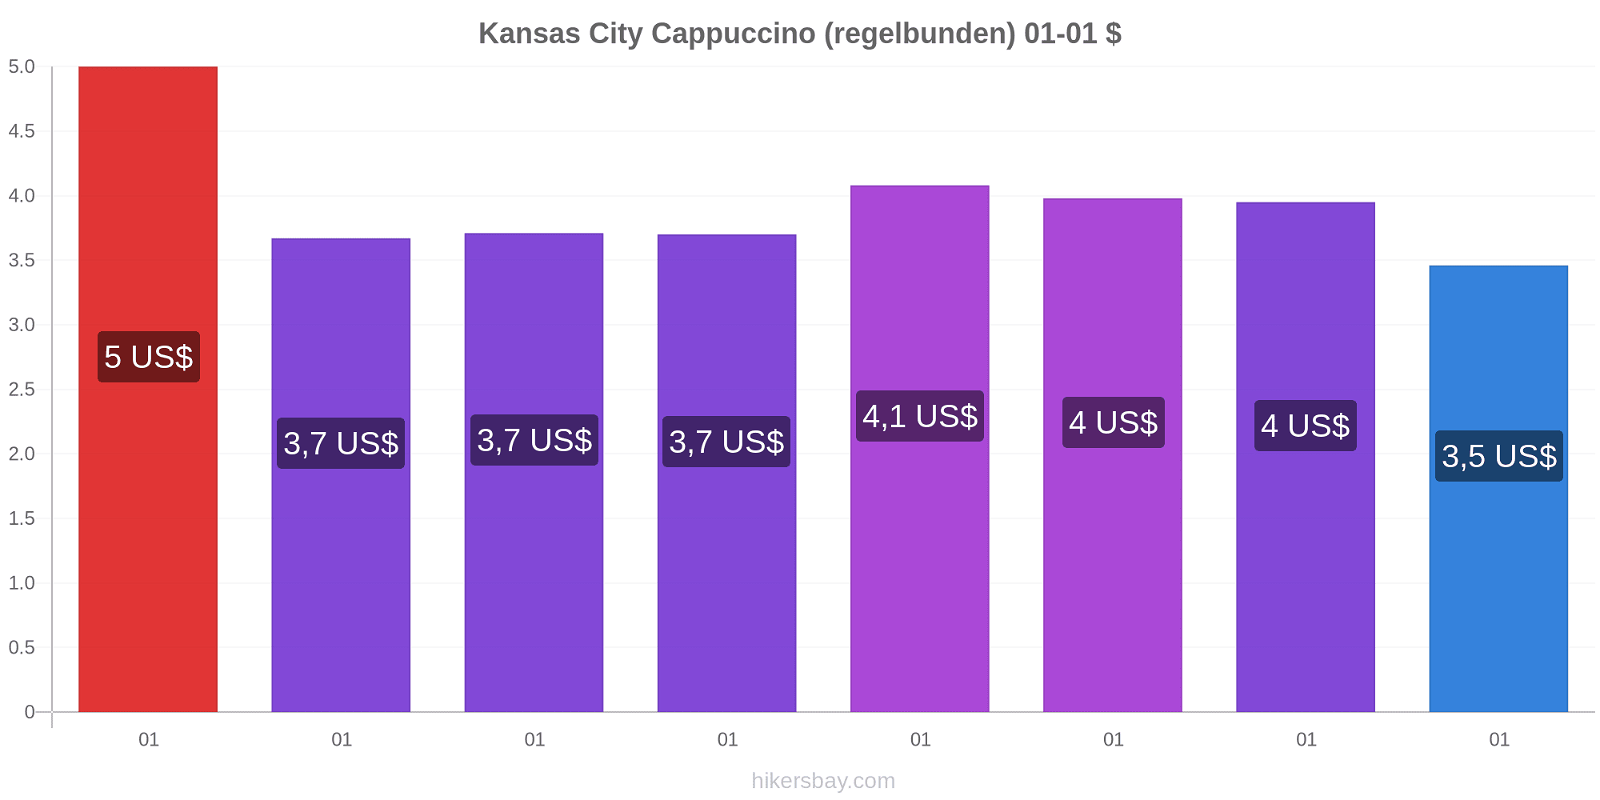 Kansas City prisförändringar Cappuccino (regelbunden) hikersbay.com